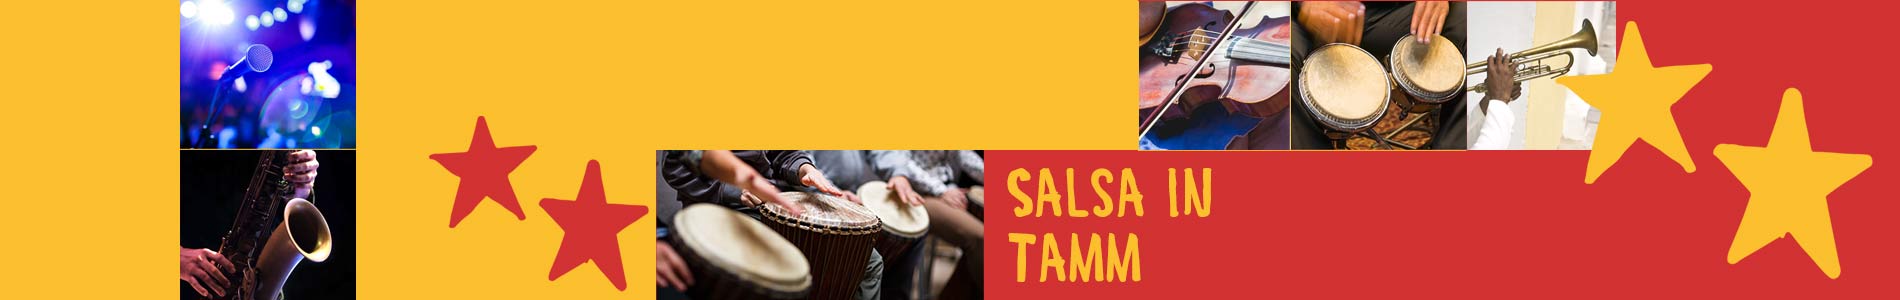 Salsa in Tamm – Salsa lernen und tanzen, Tanzkurse, Partys, Veranstaltungen